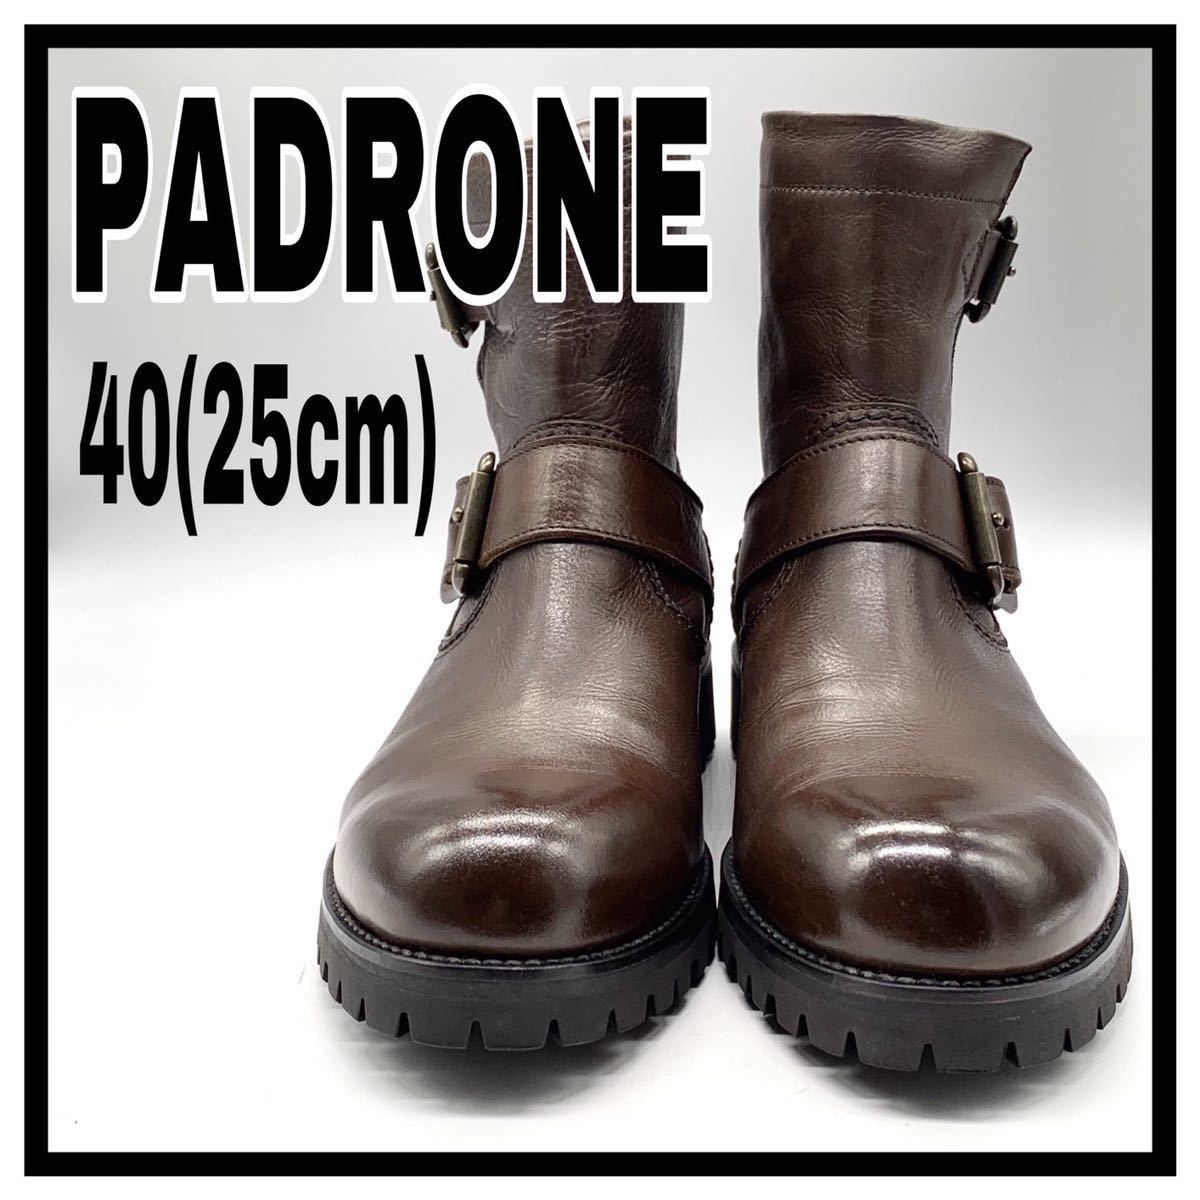 PADRONE（パドローネ）エンジニアブーツ ショートブーツ プレーントゥ ビブラムソール レザー ブラウン 40 25cm 日本製 メンズ